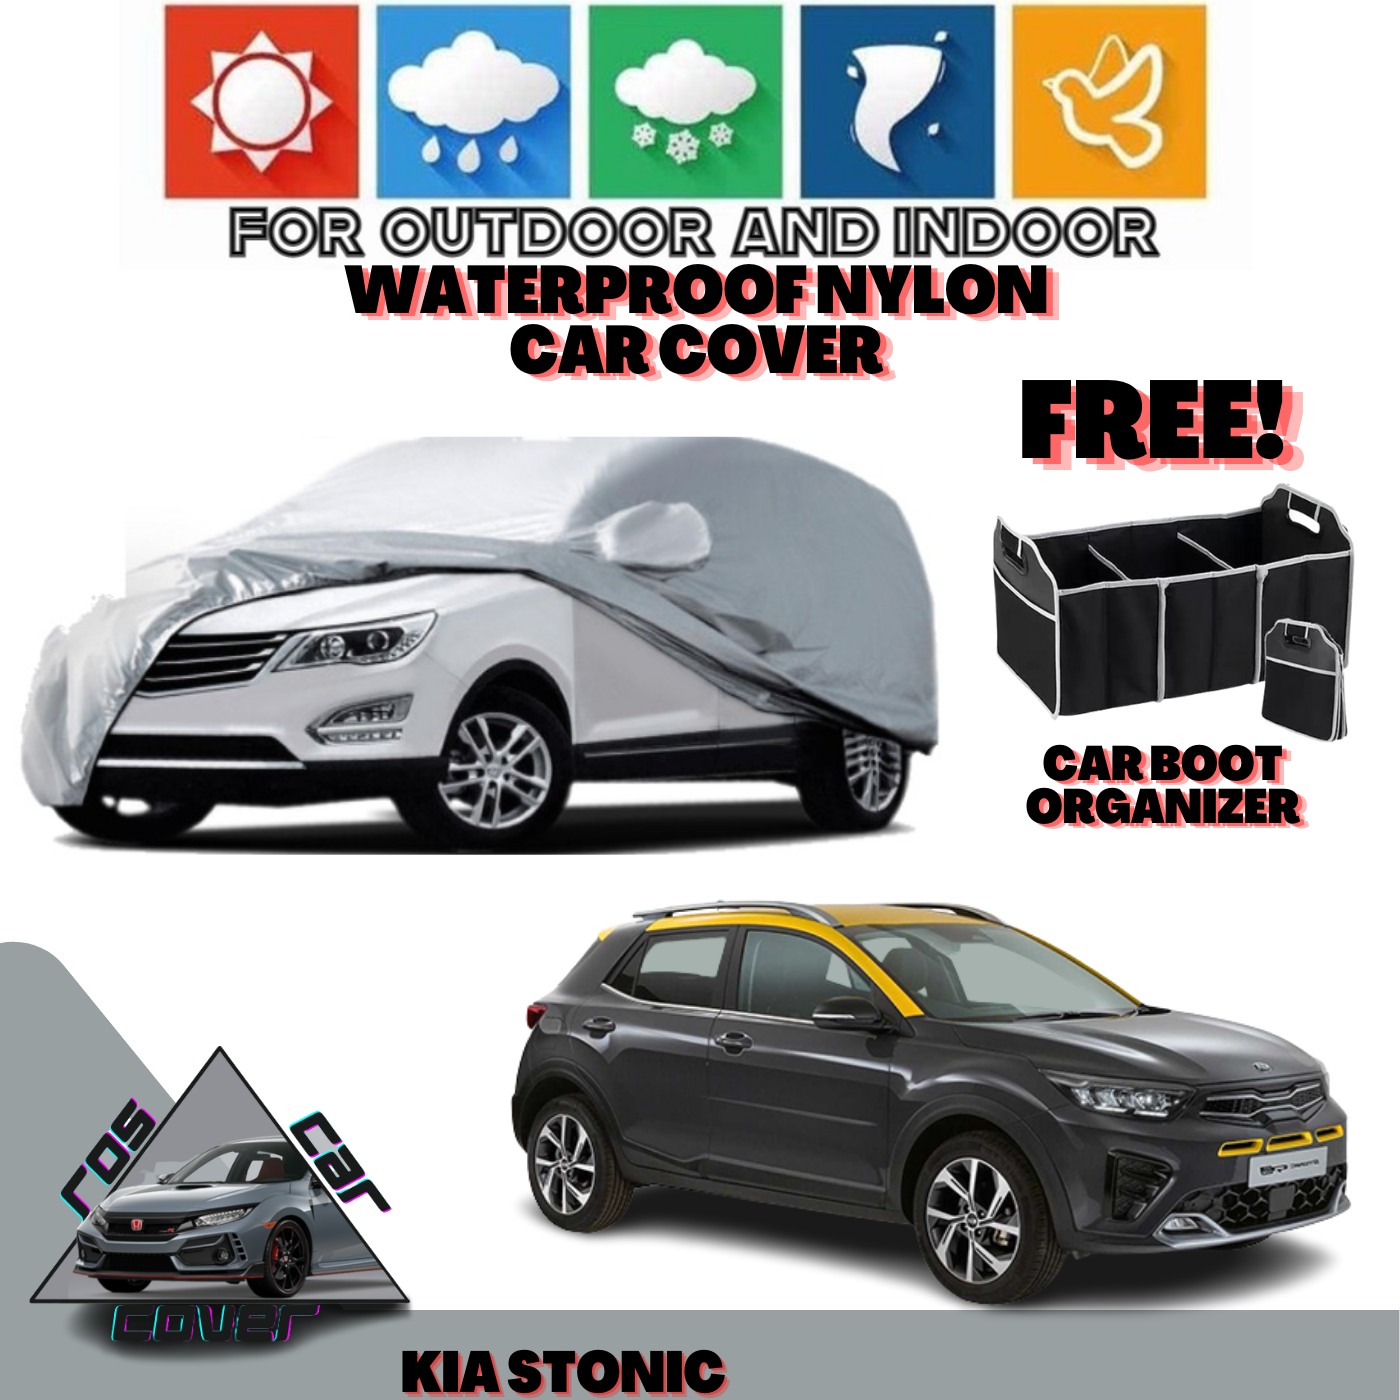 Kia Stonic Heavy Duty Thick Waterproof Nylon Car Cover With Car